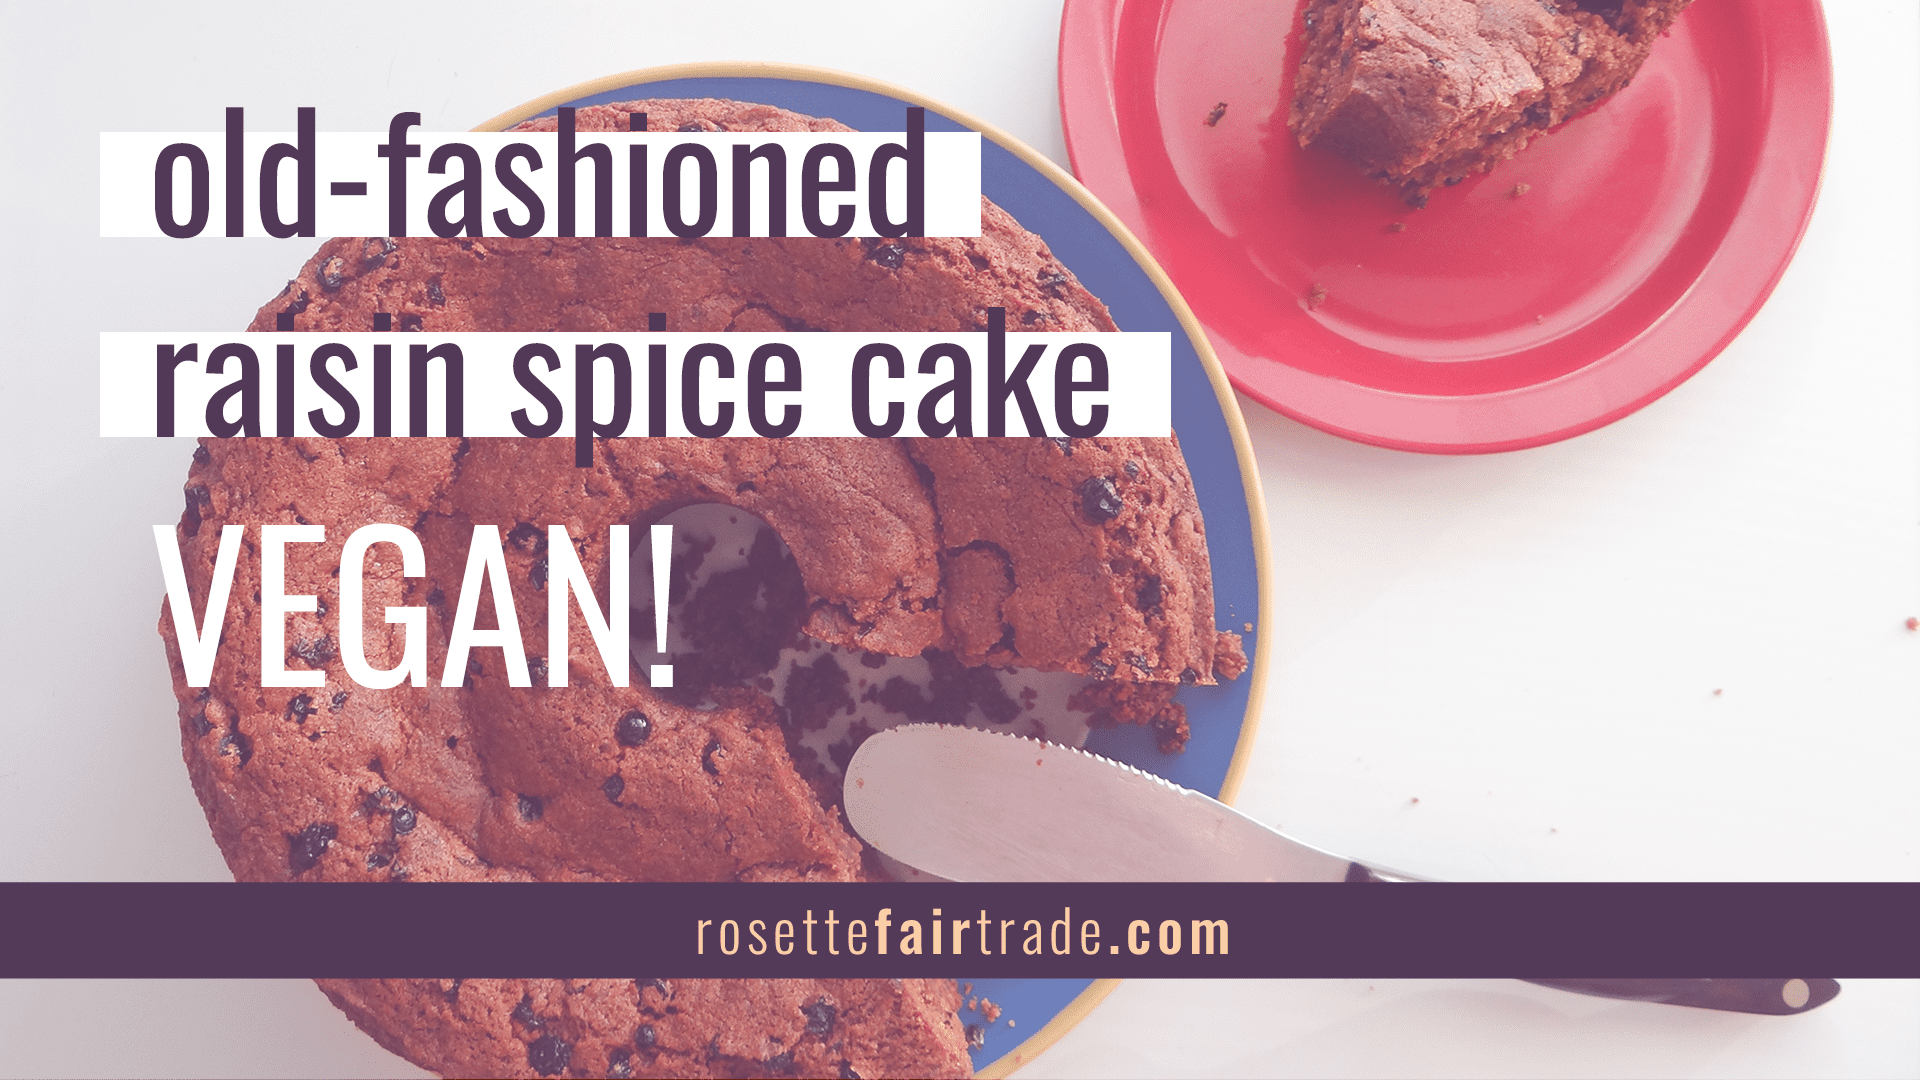 Grannys vegan raisin spice cake recipe on Rosette Fair Trade (featured image alt 2)